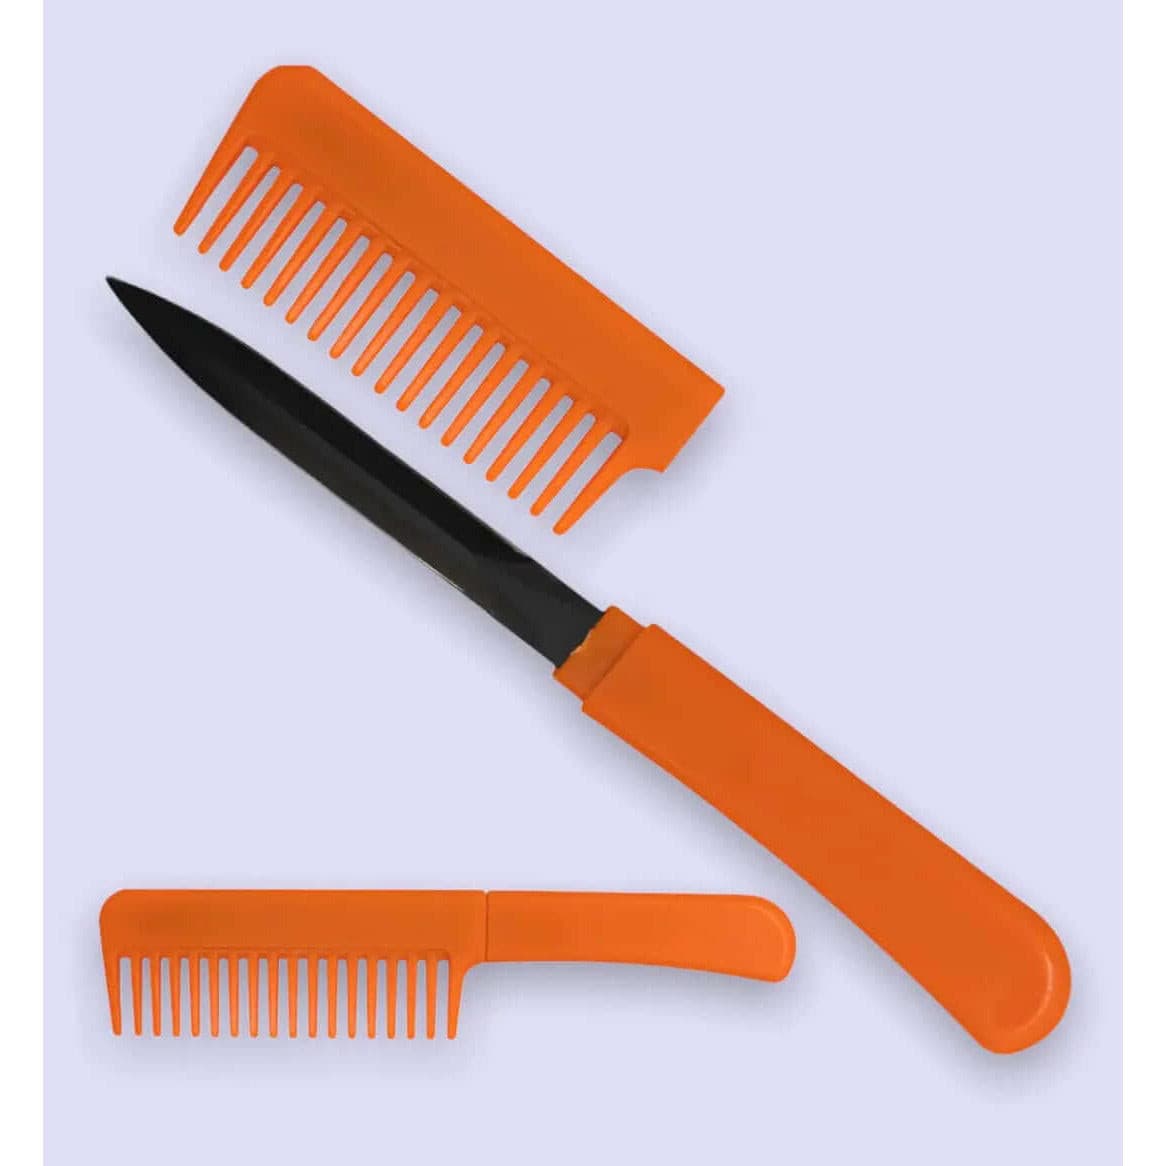 Orange Comb knife